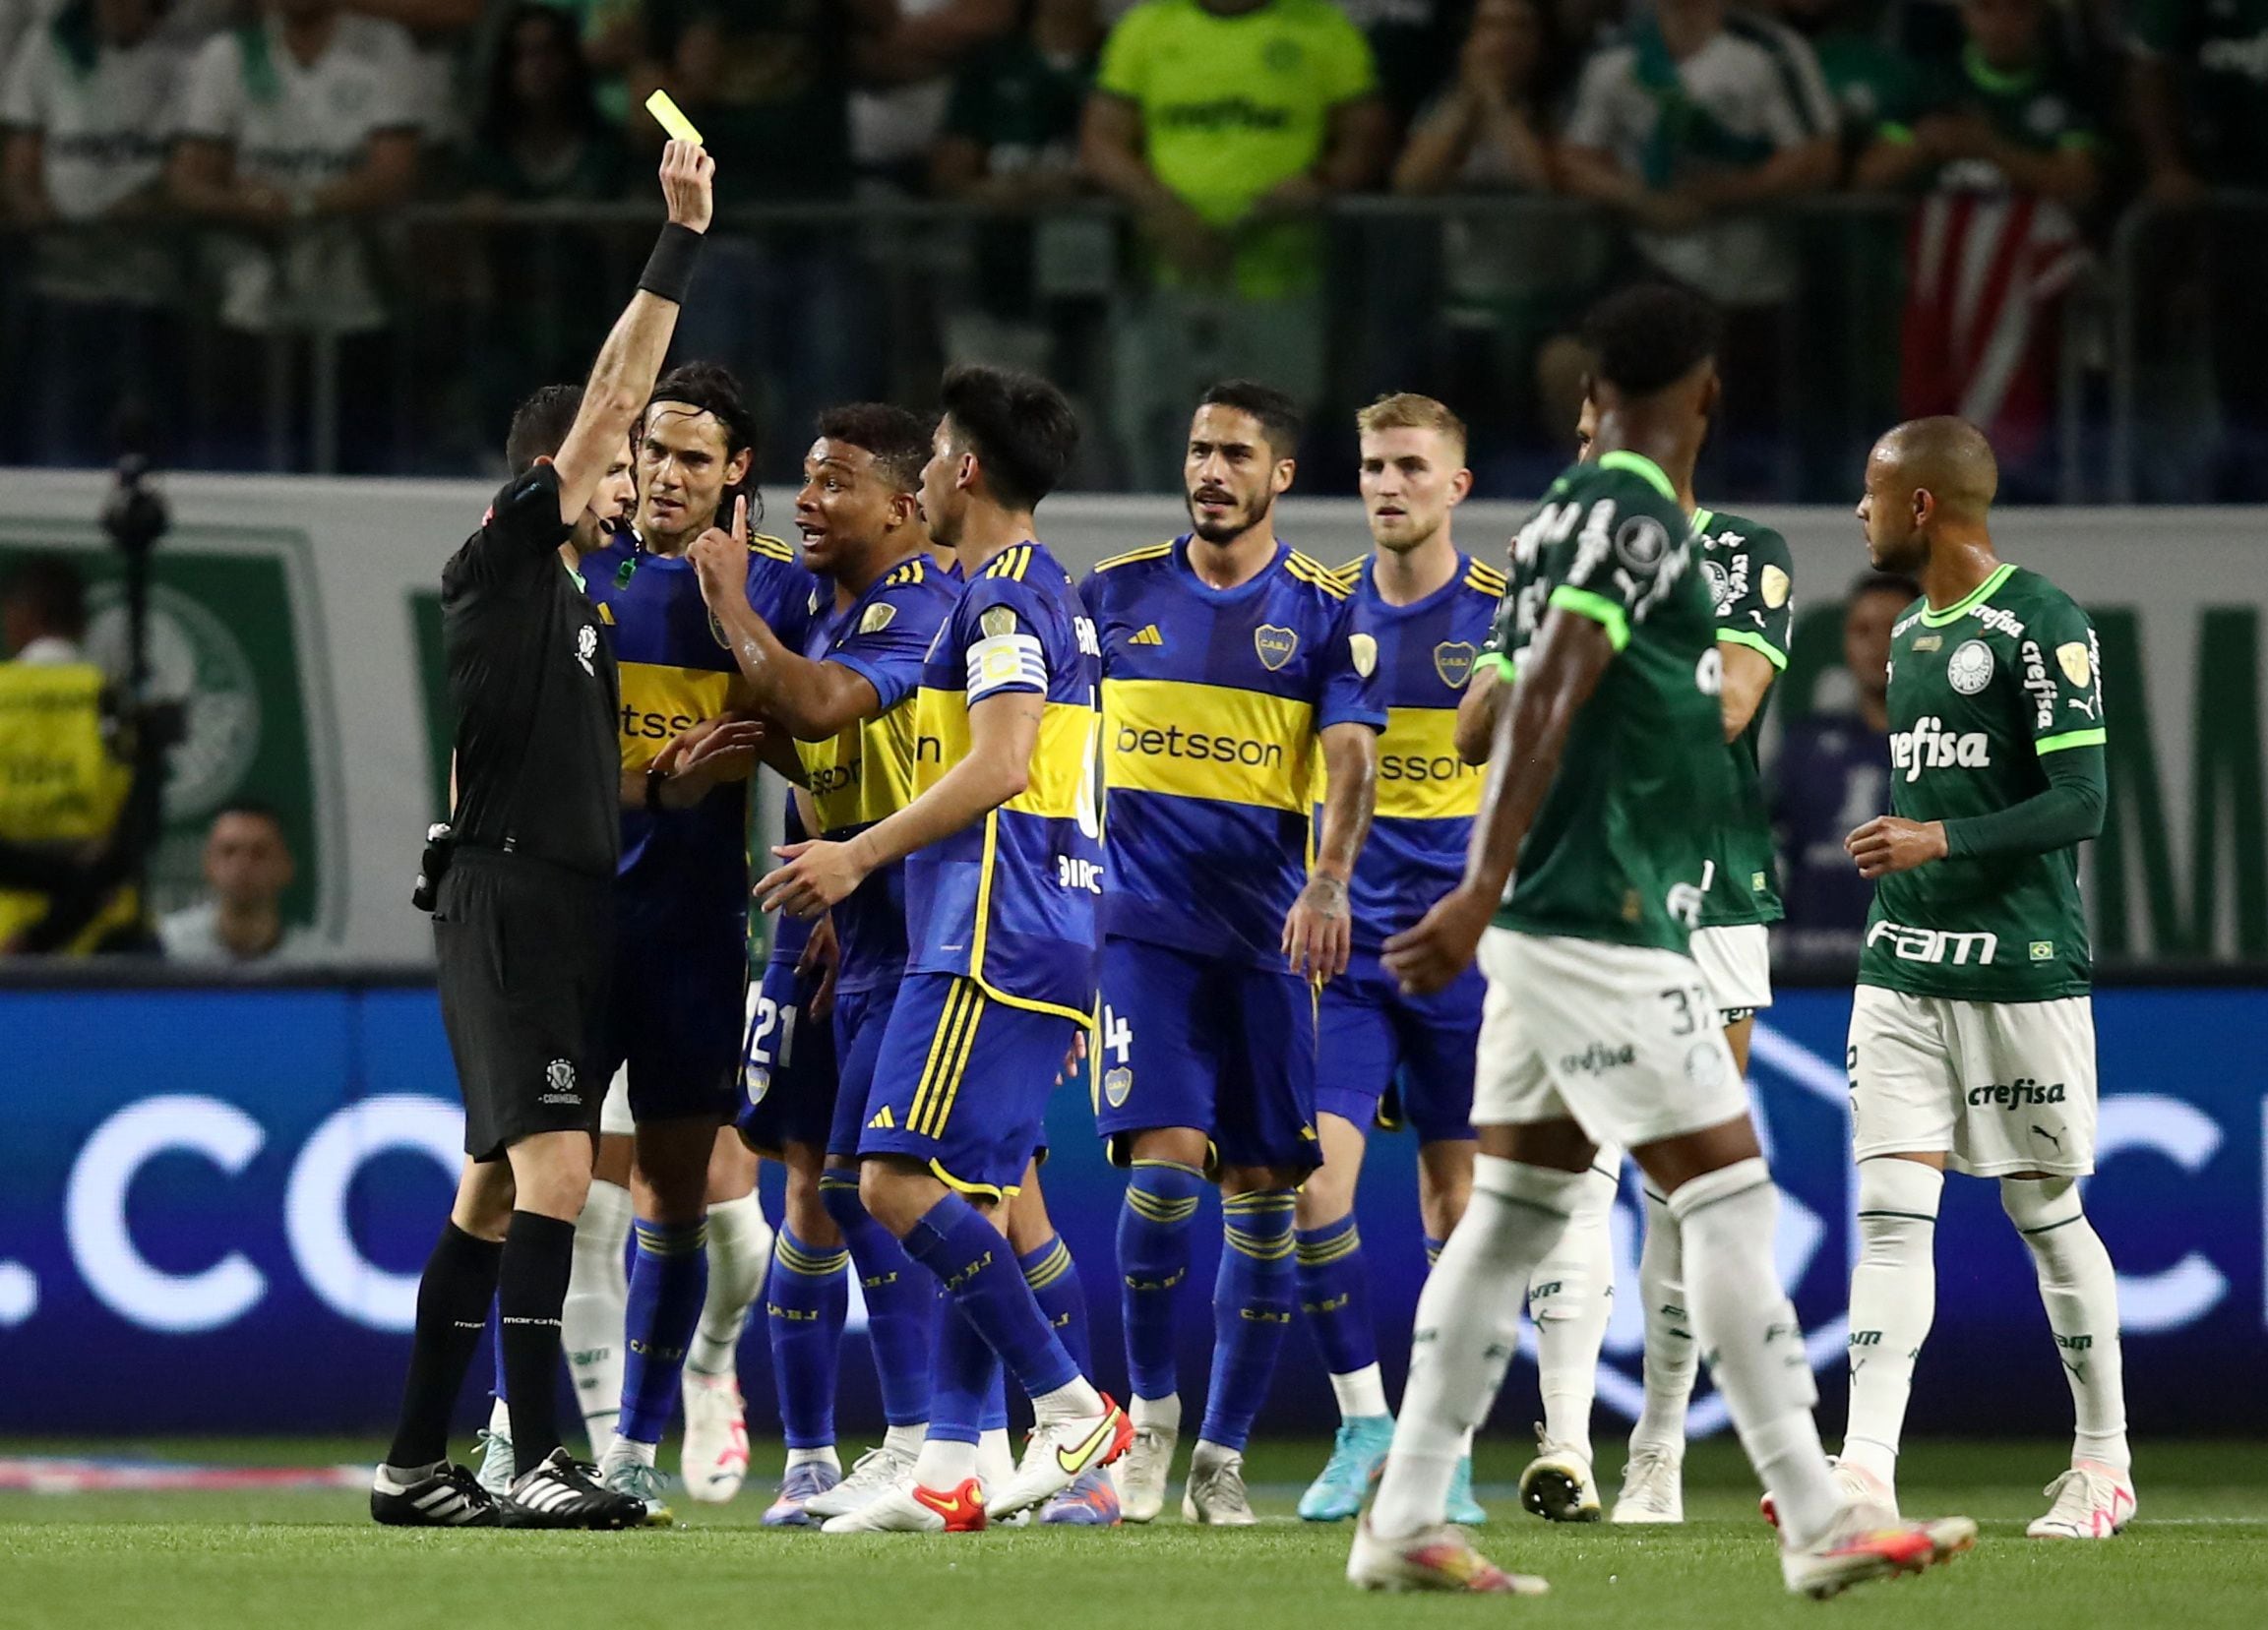 Con Chiquito Romero como gran figura, Boca eliminó a Palmeiras por penales  y jugará la final de la Copa Libertadores - Infobae